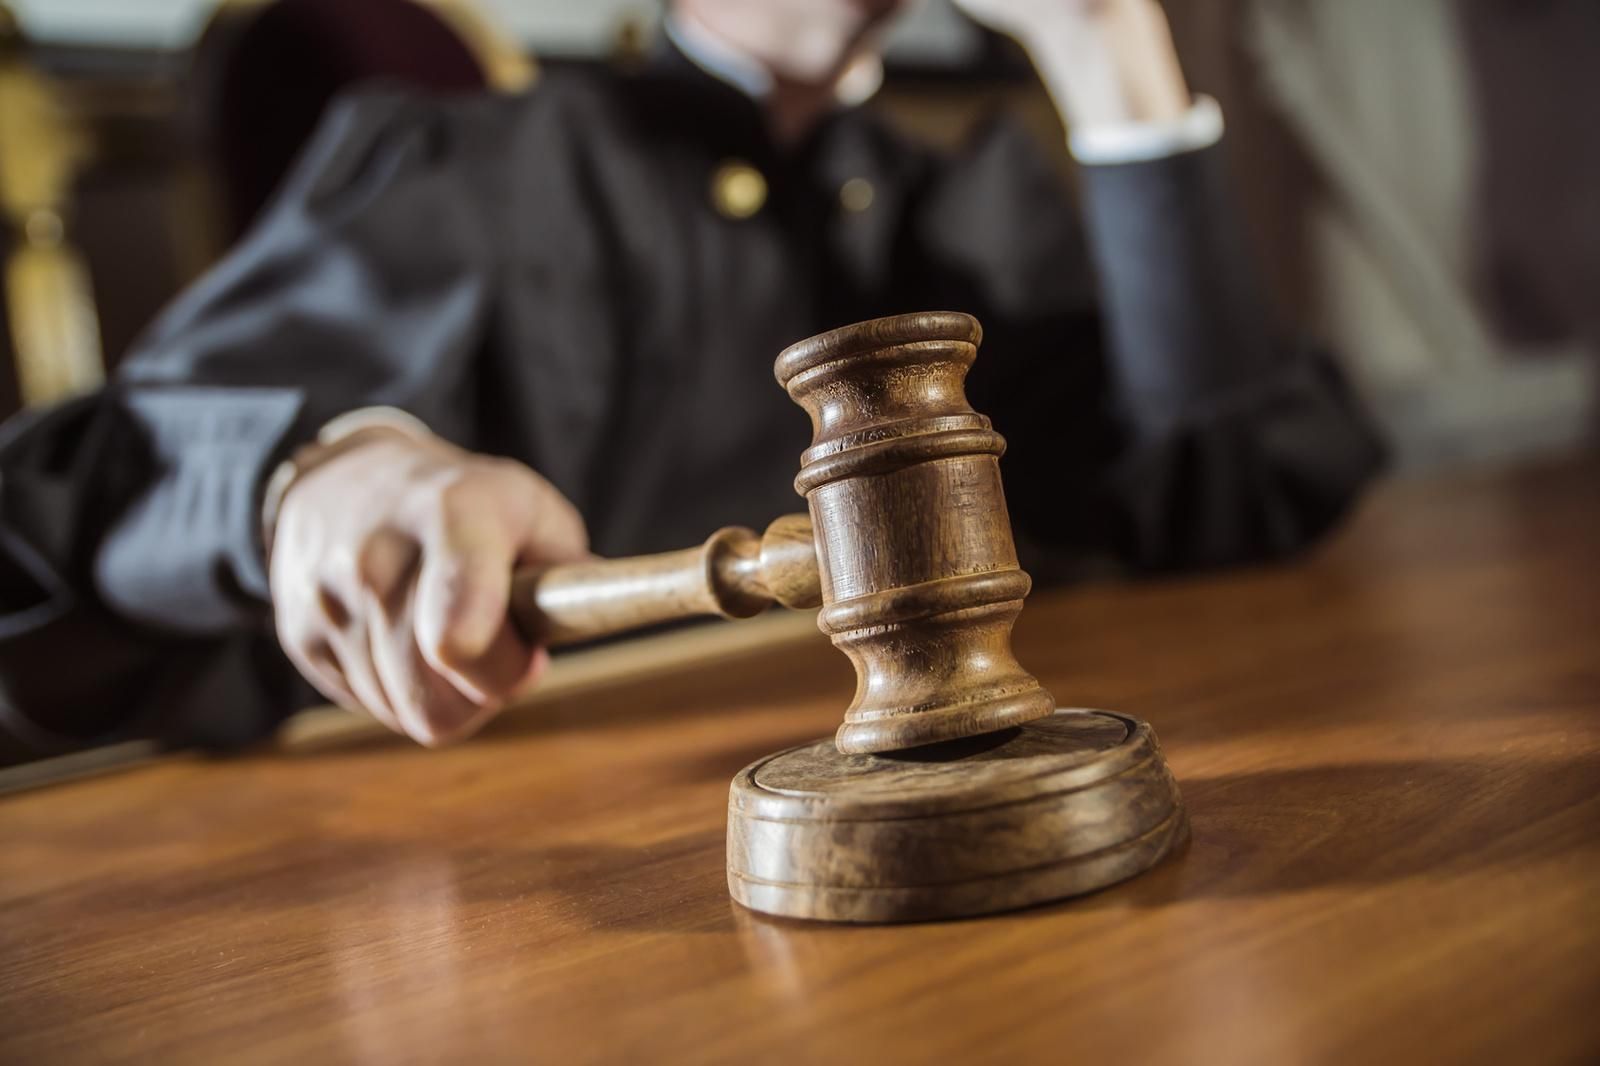  Скандальные решения суда по делу Омельяненко: судья в 30 раз сократил сумму залога